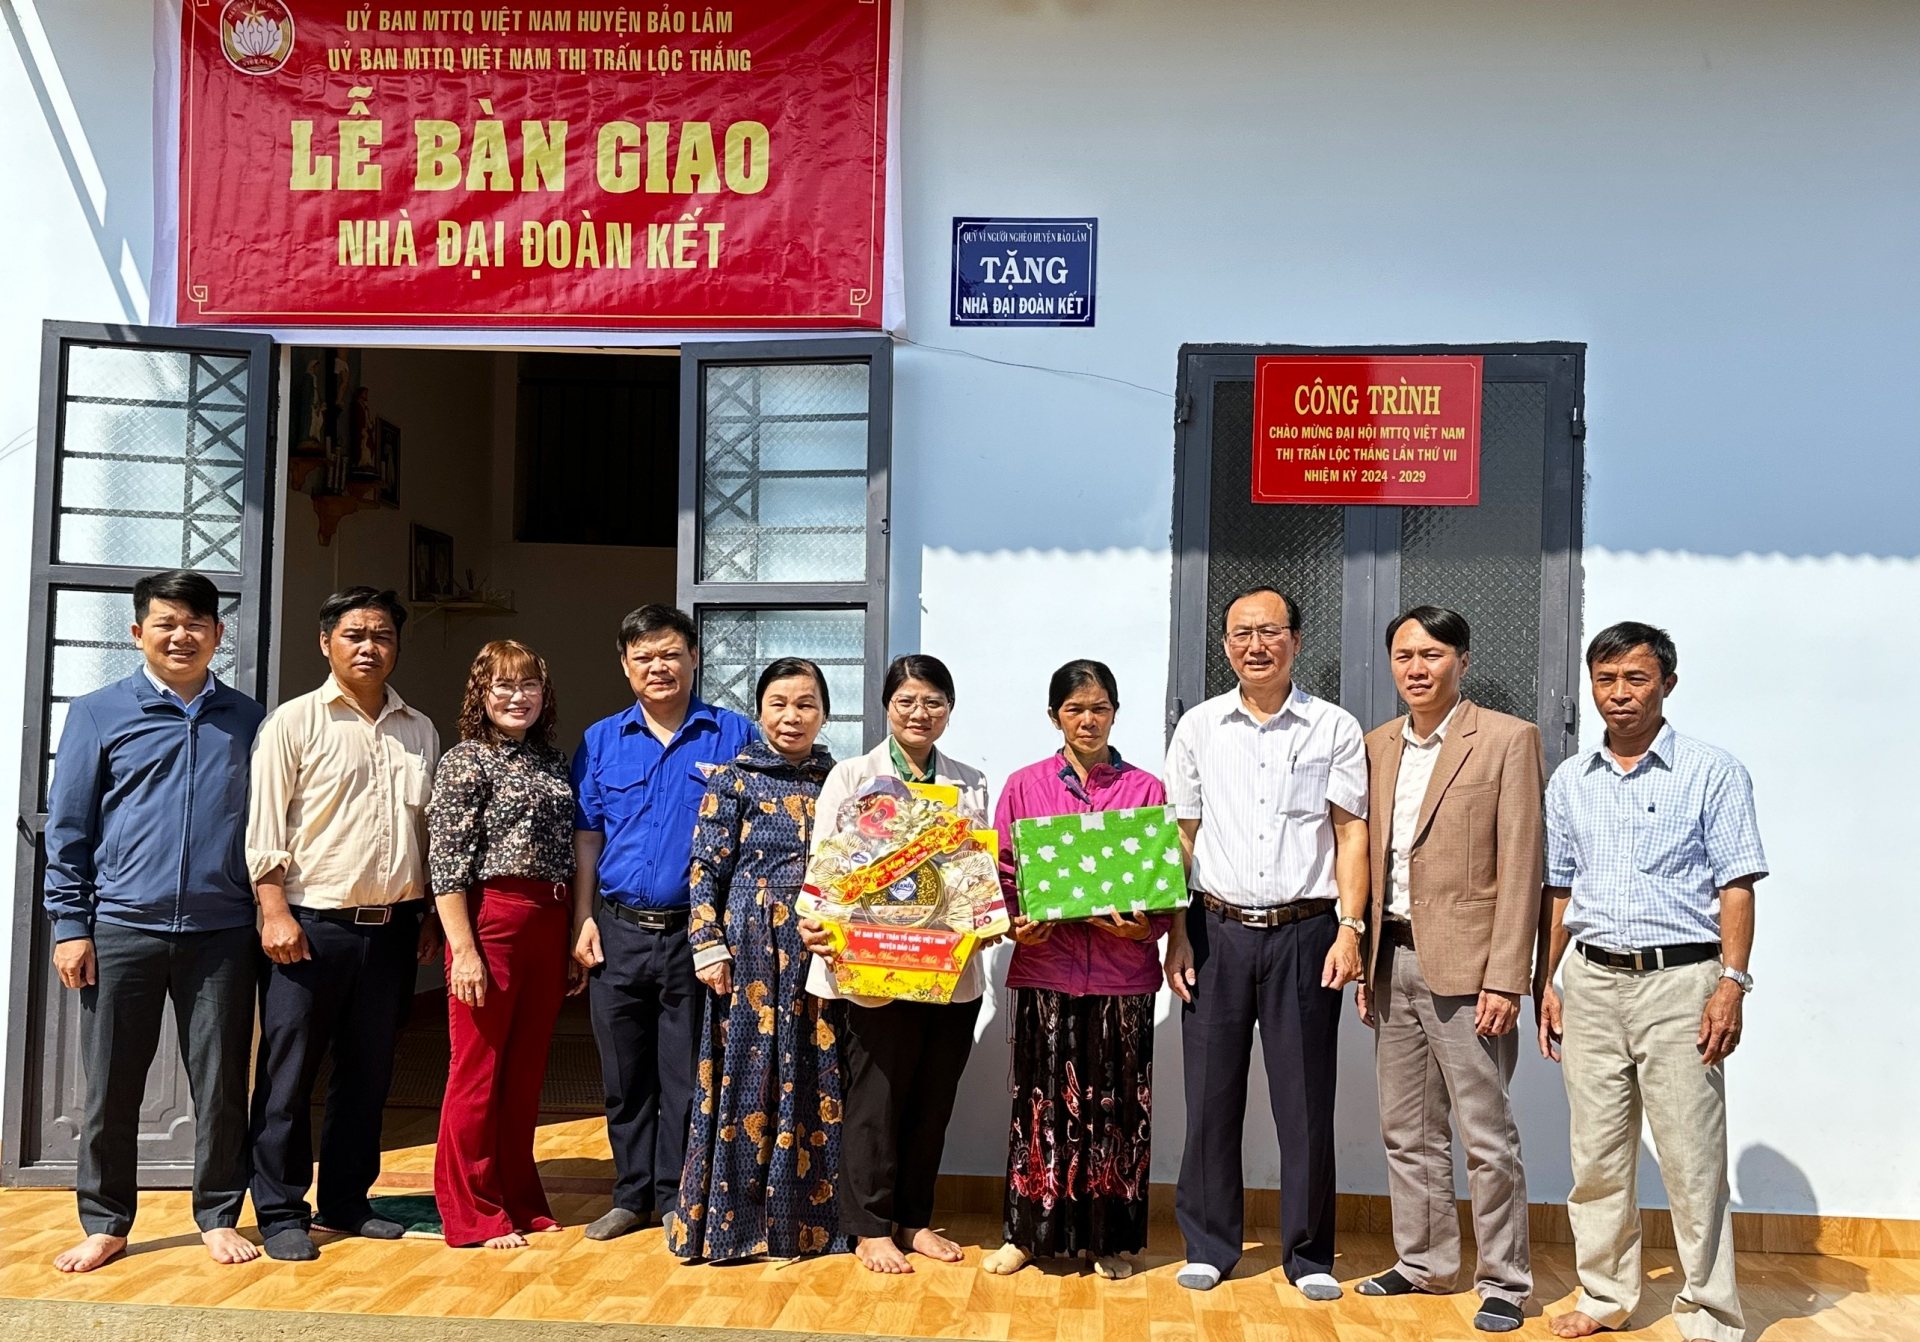 Ủy ban MTTQ Việt Nam huyện Bảo Lâm bàn giao nhà đại đoàn kết và trao tặng quà cho gia đình bà Ka Thốp